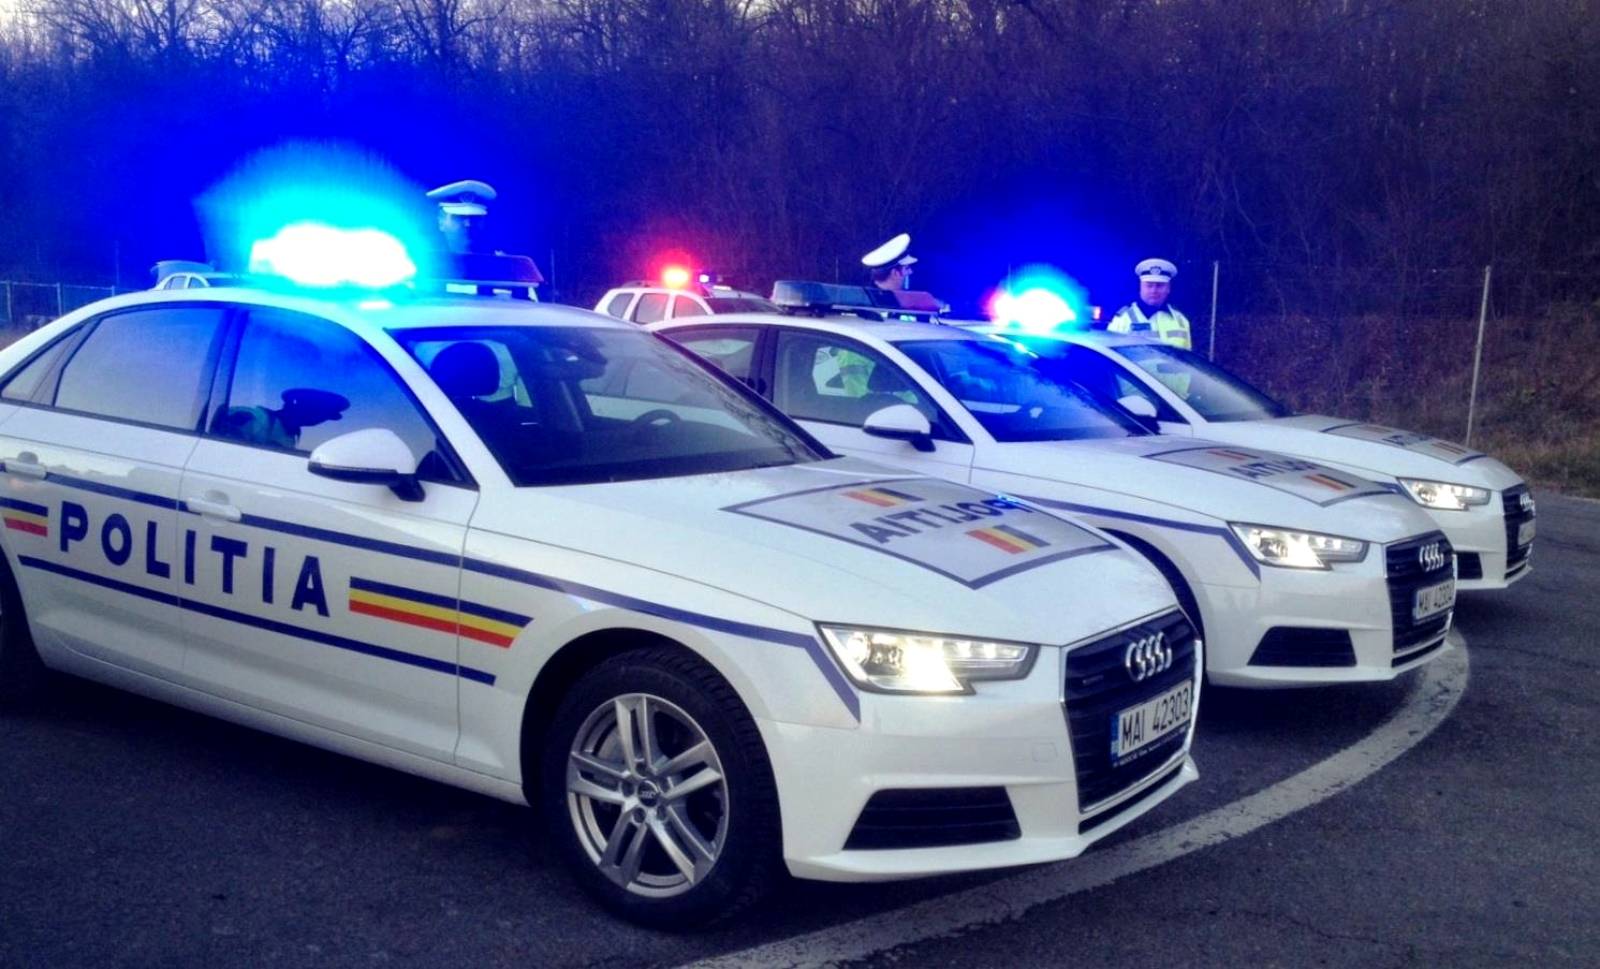 Rumænsk politiforsikring